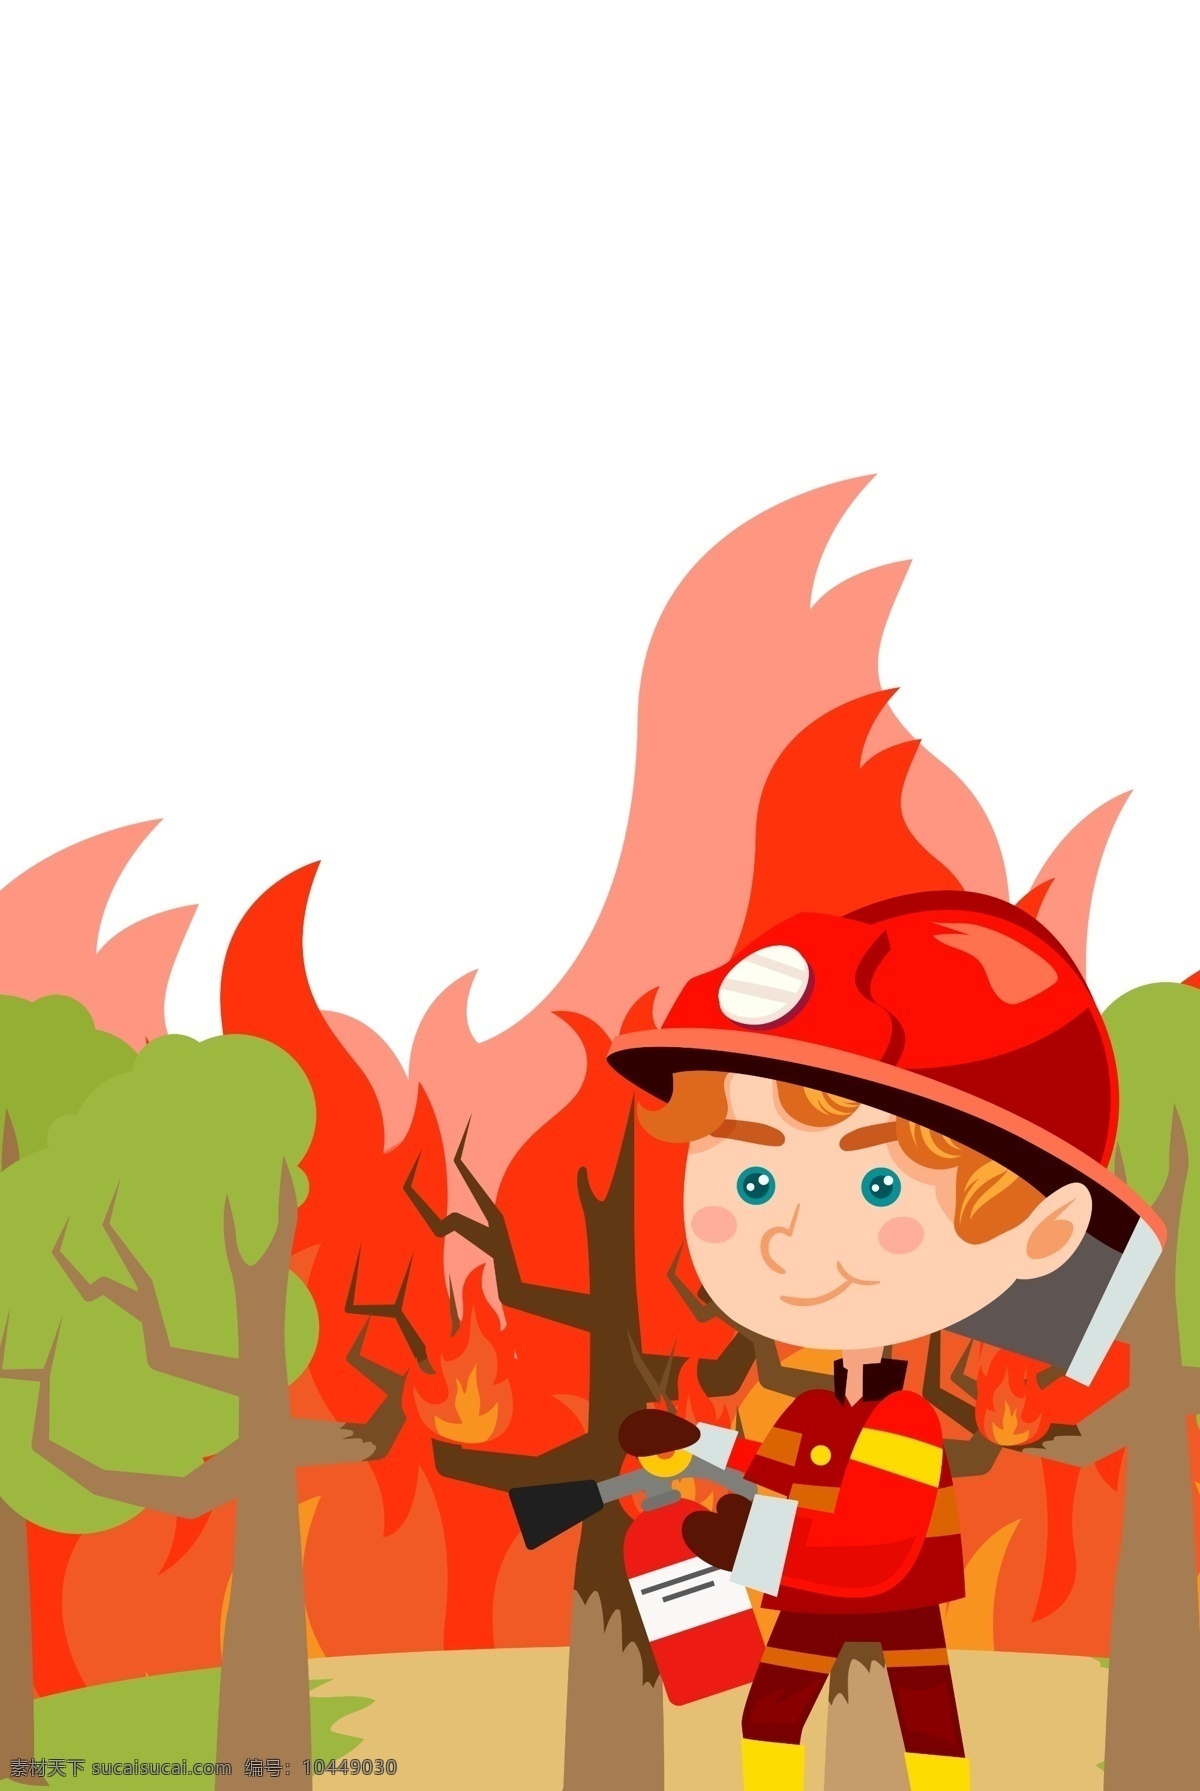 卡通 消防员 插画 卡通人物 灭火 火灾 救援 人物图库 职业人物